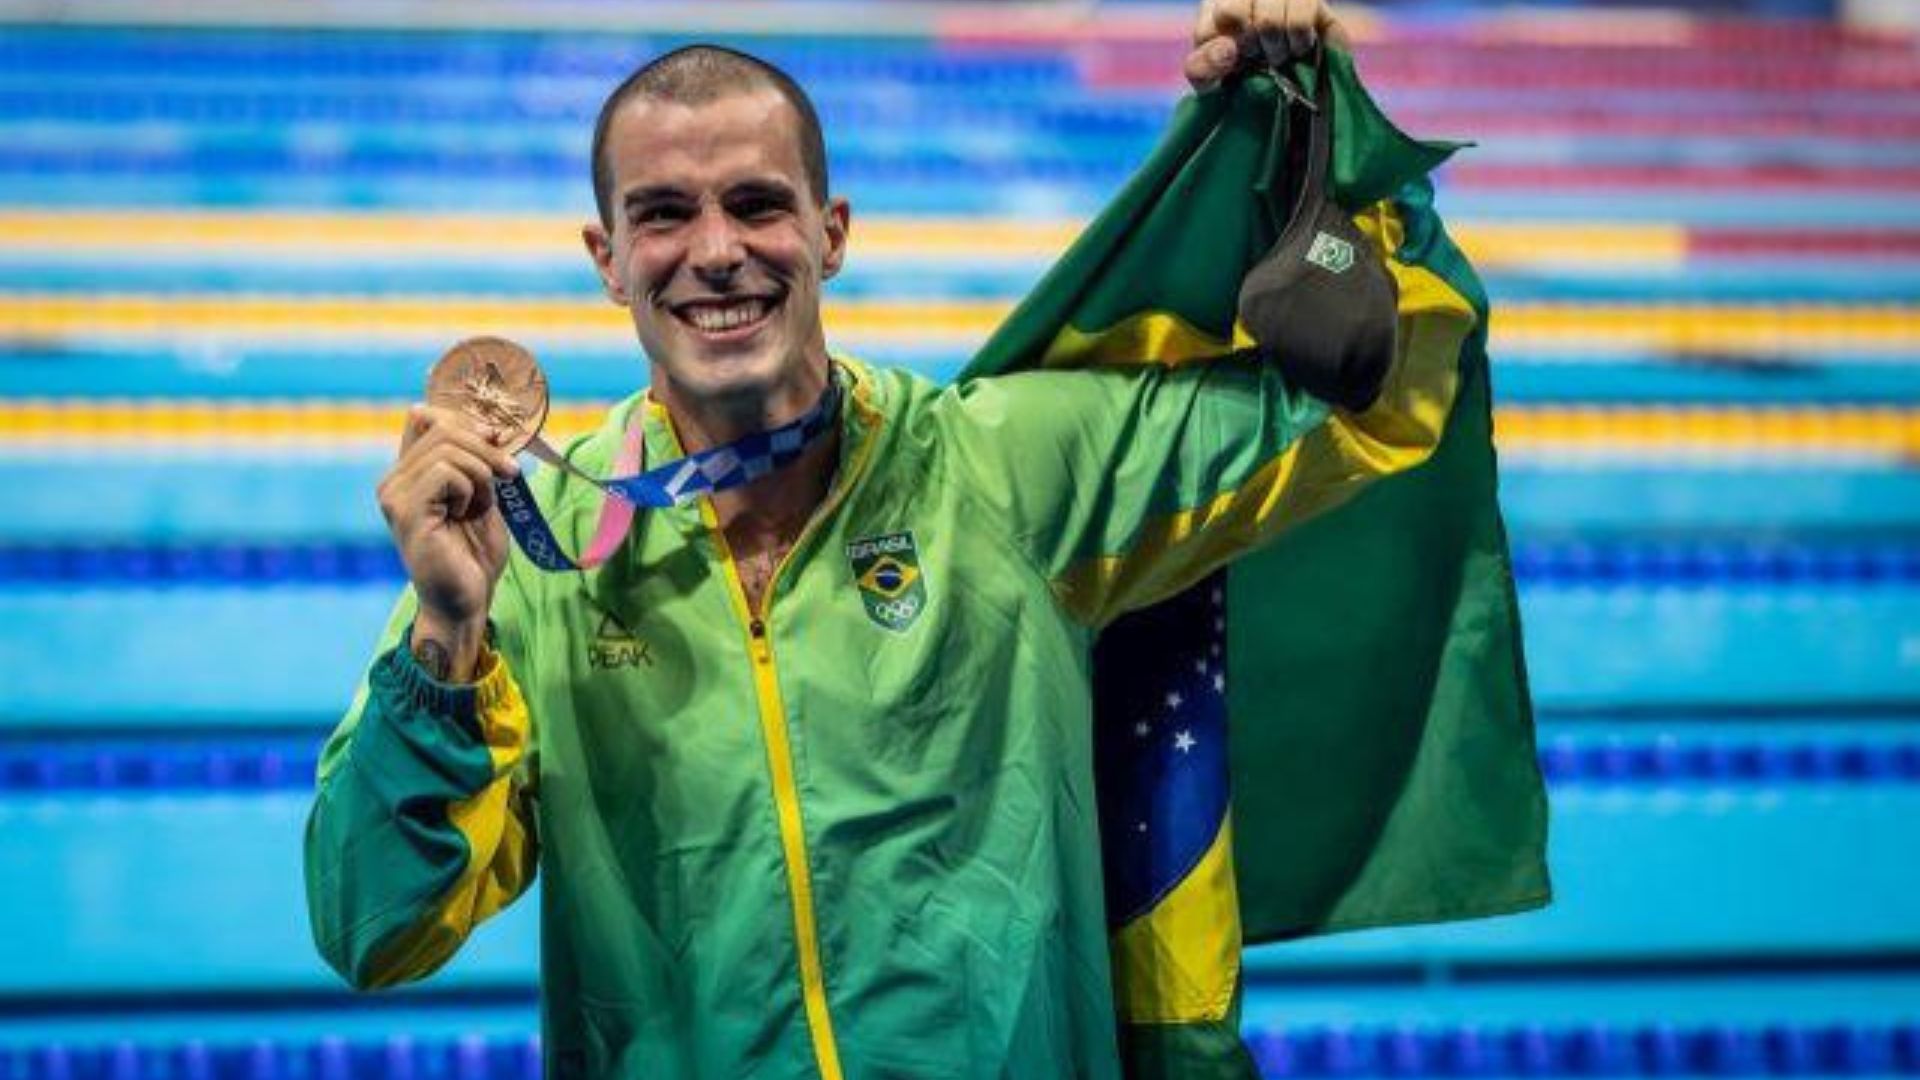 PARIS 2024: medalhista olímpico brasileiro desiste de vaga após lesões